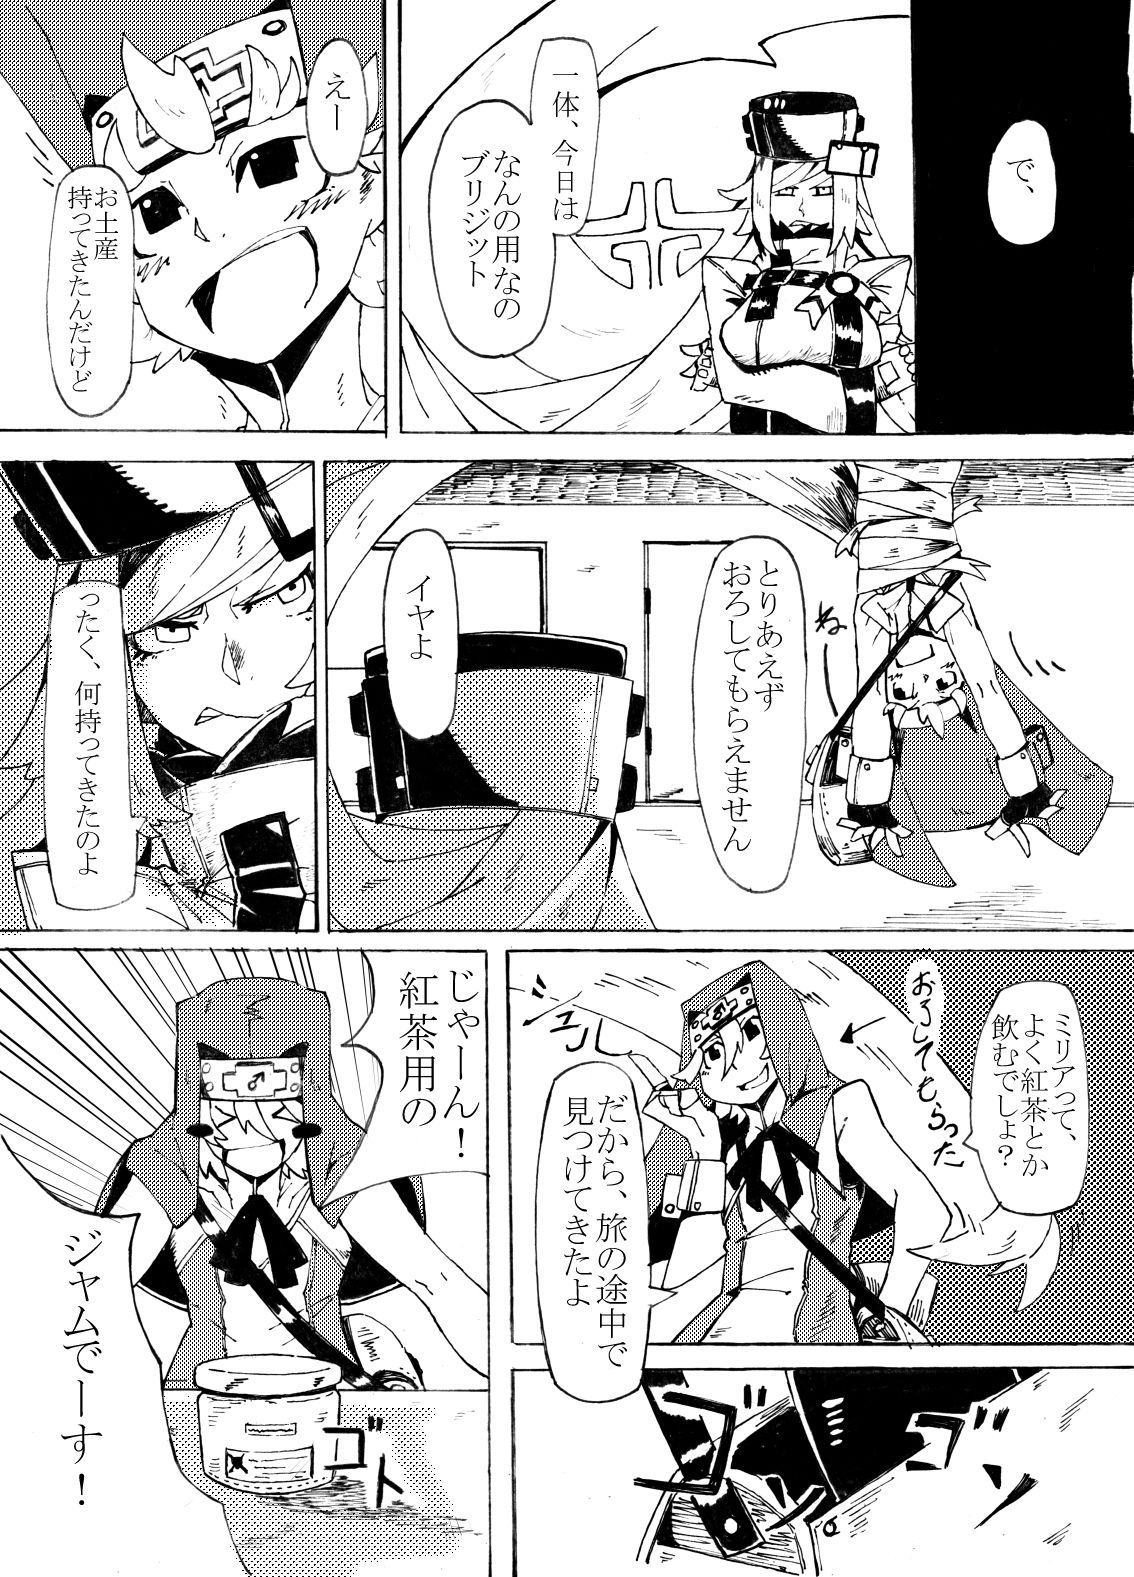 (CT29) [Konatuiro (Mr.way)] Millia no Koto ga Suki ni Natta (Guilty Gear) page 4 full